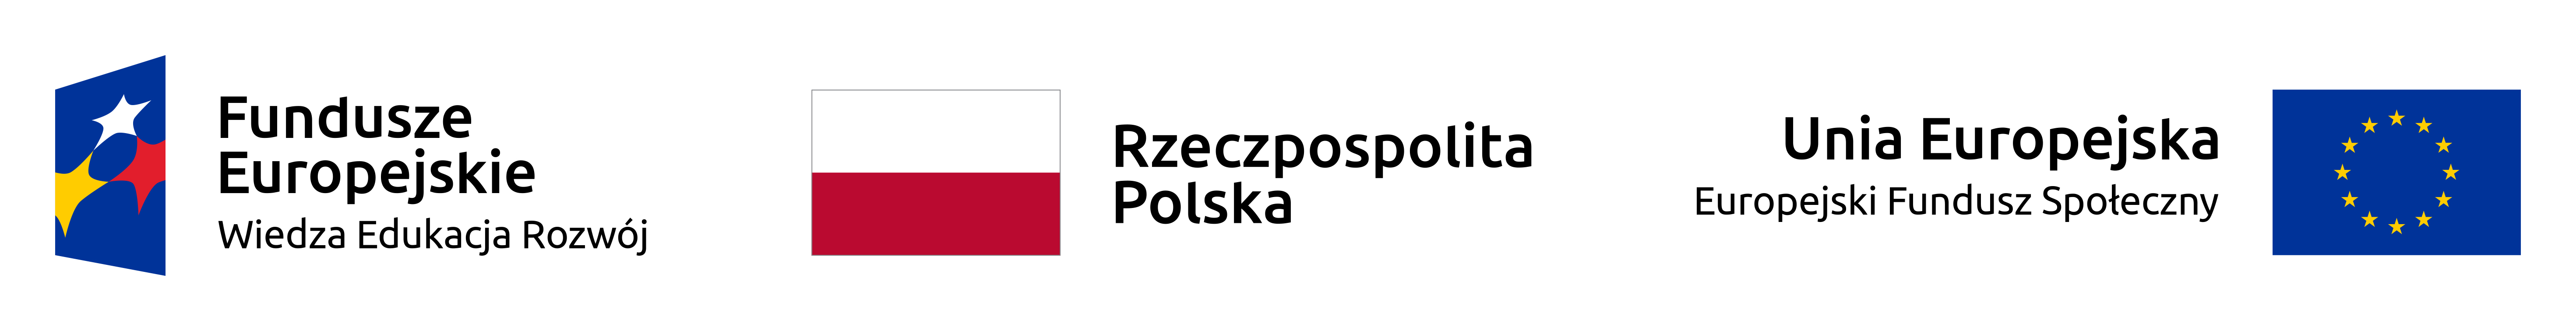 Logo Fundusze Europejskie, Wiedza, Edukacja, Rozwój. Flaga Rzeczpospolitej Polskiej. Flaga Unii Europejskiej, Europejski Fundusz Społeczny.